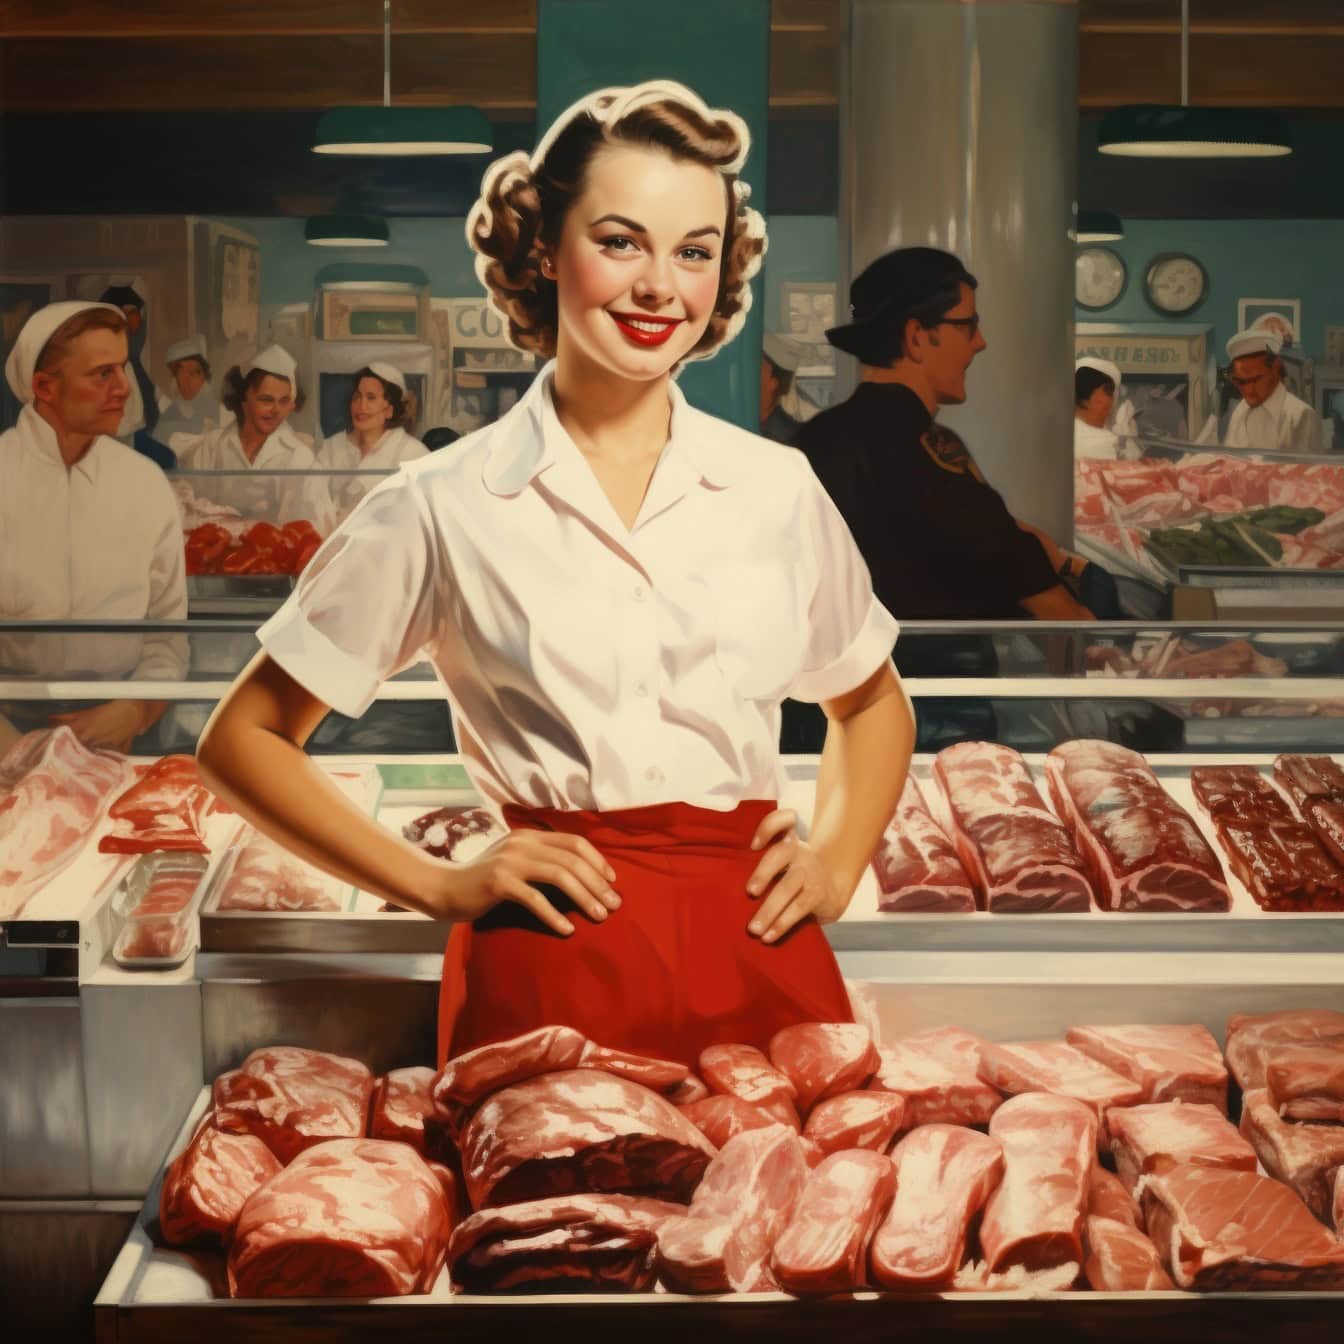 Seorang wanita tukang daging berdiri di depan daging di toko daging atau supermarket, sebuah ilustrasi dengan gaya tahun 1960-an